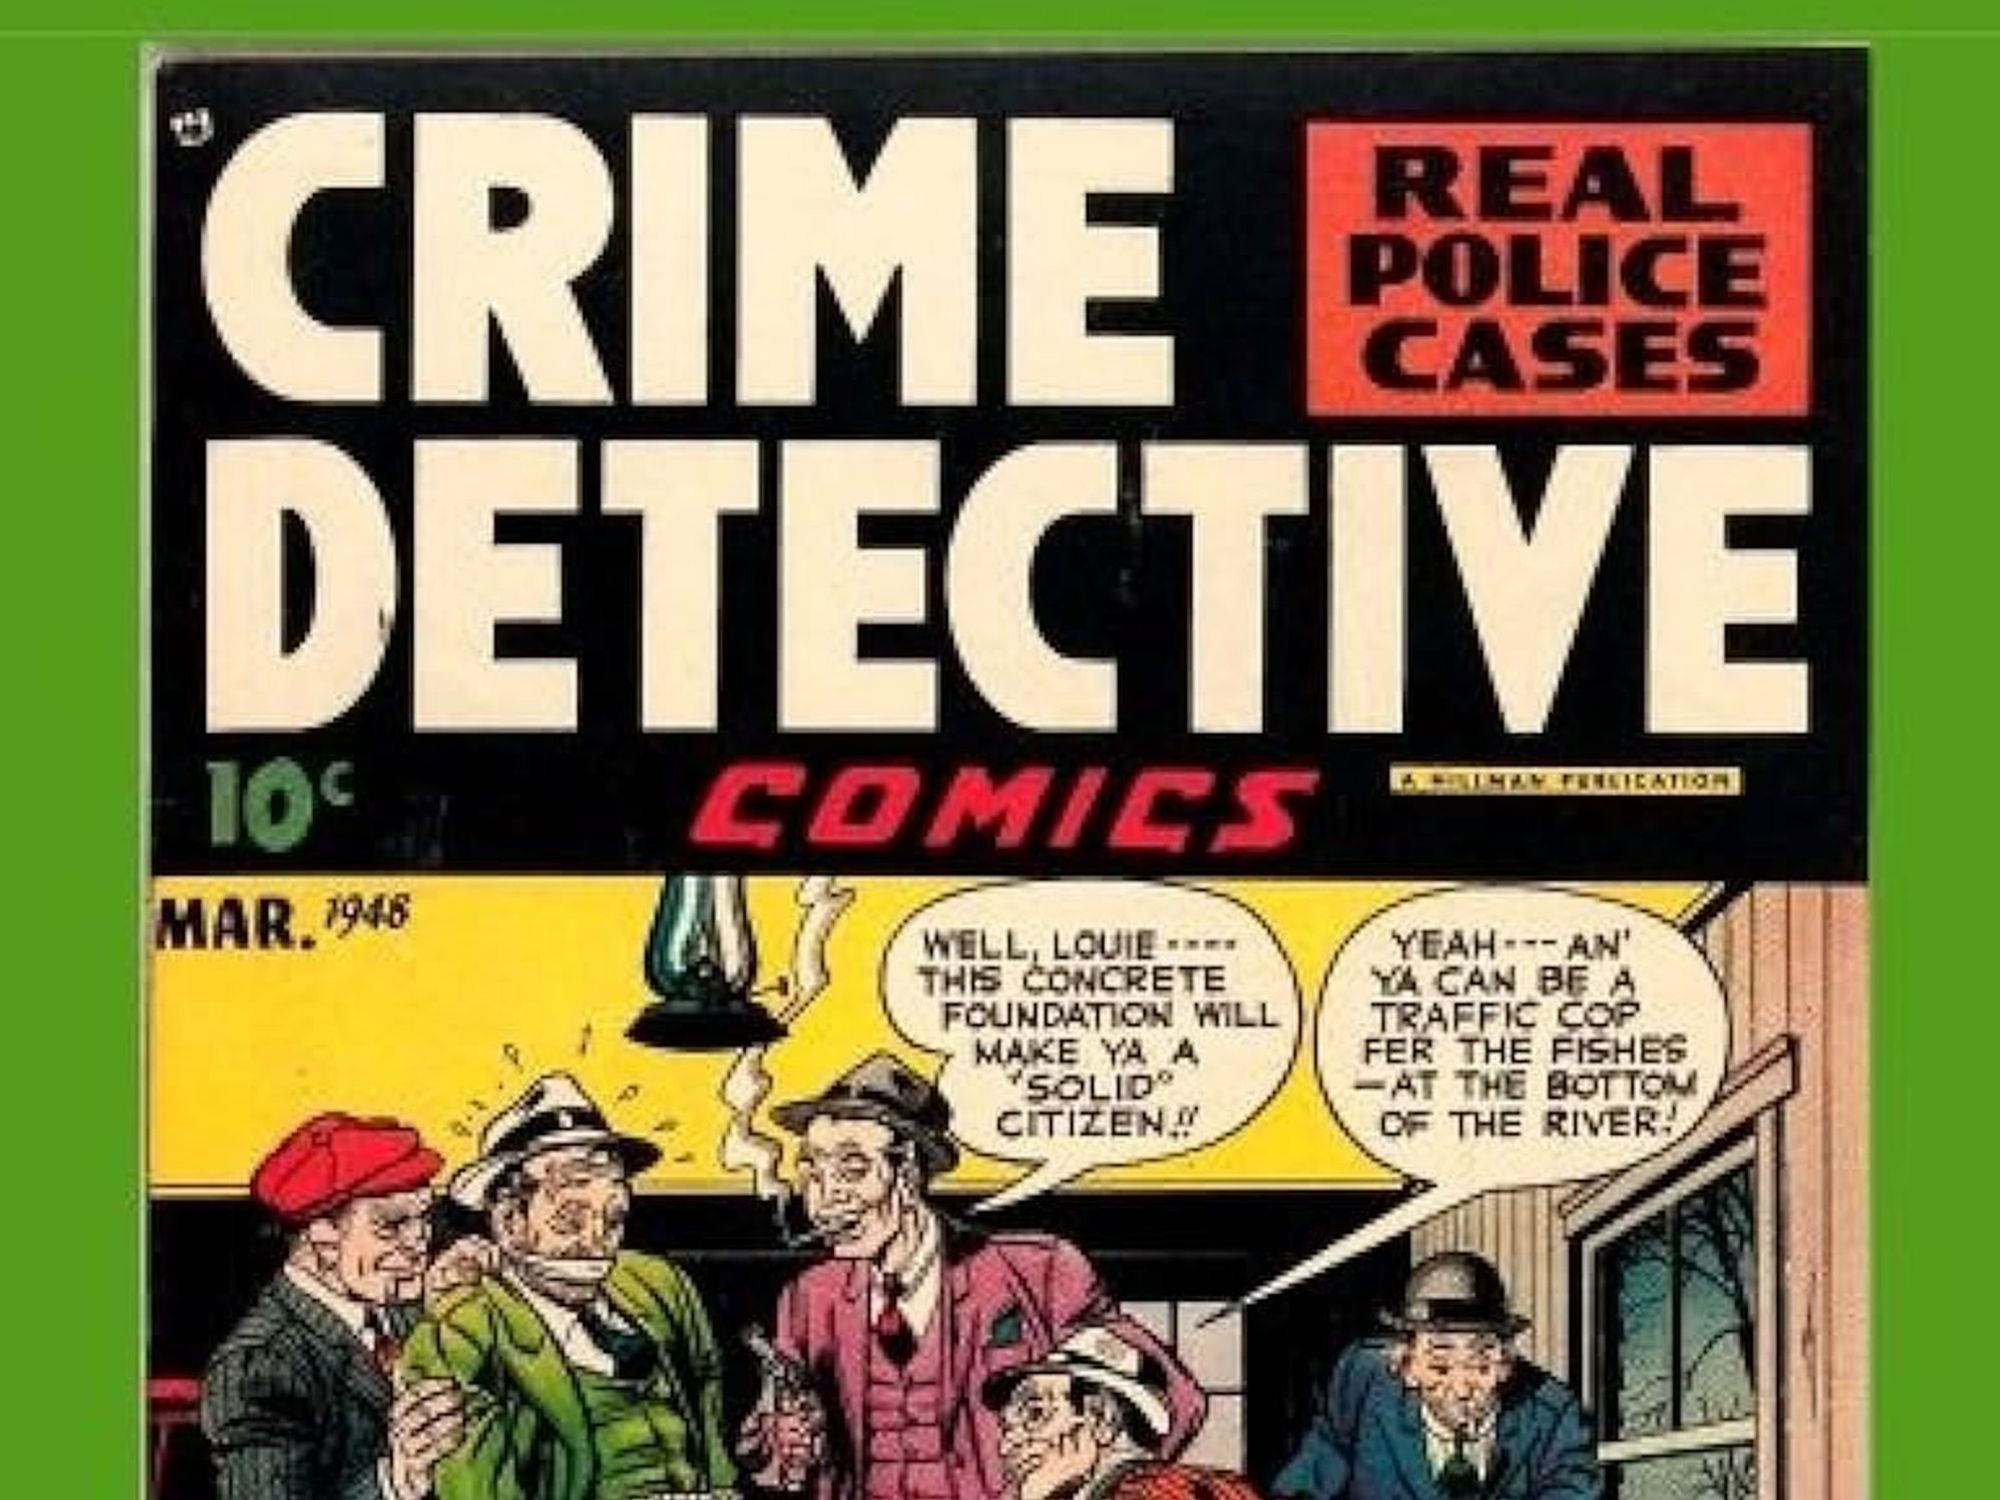 True Crime comic book